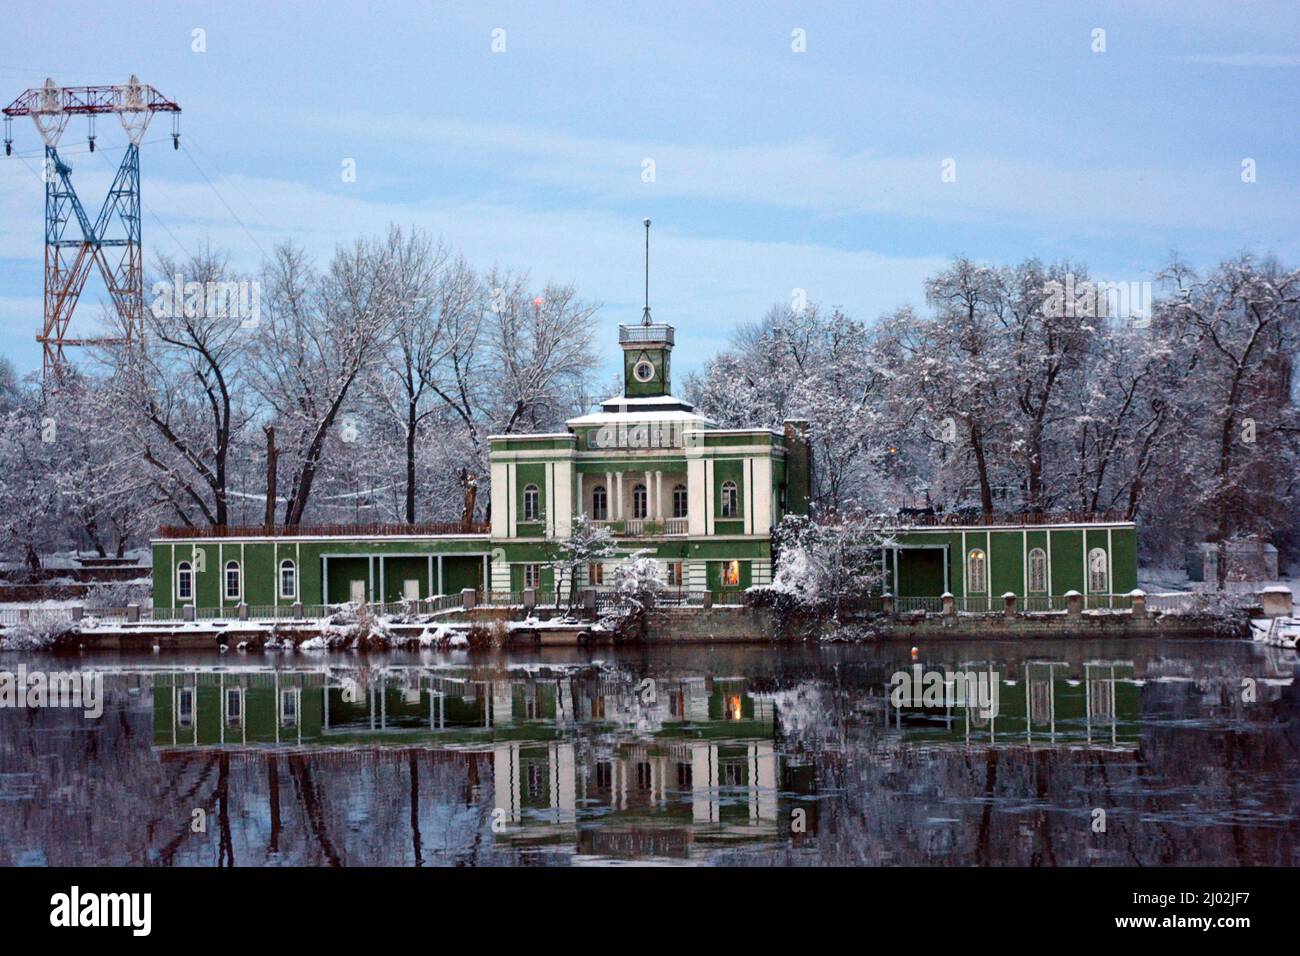 Bellissimo e insolito palazzo bianco verde, il complesso sportivo si trova sulle rive dell'isola Monastyrsky sul fiume Dnipro nella città di Dnipro. Foto Stock